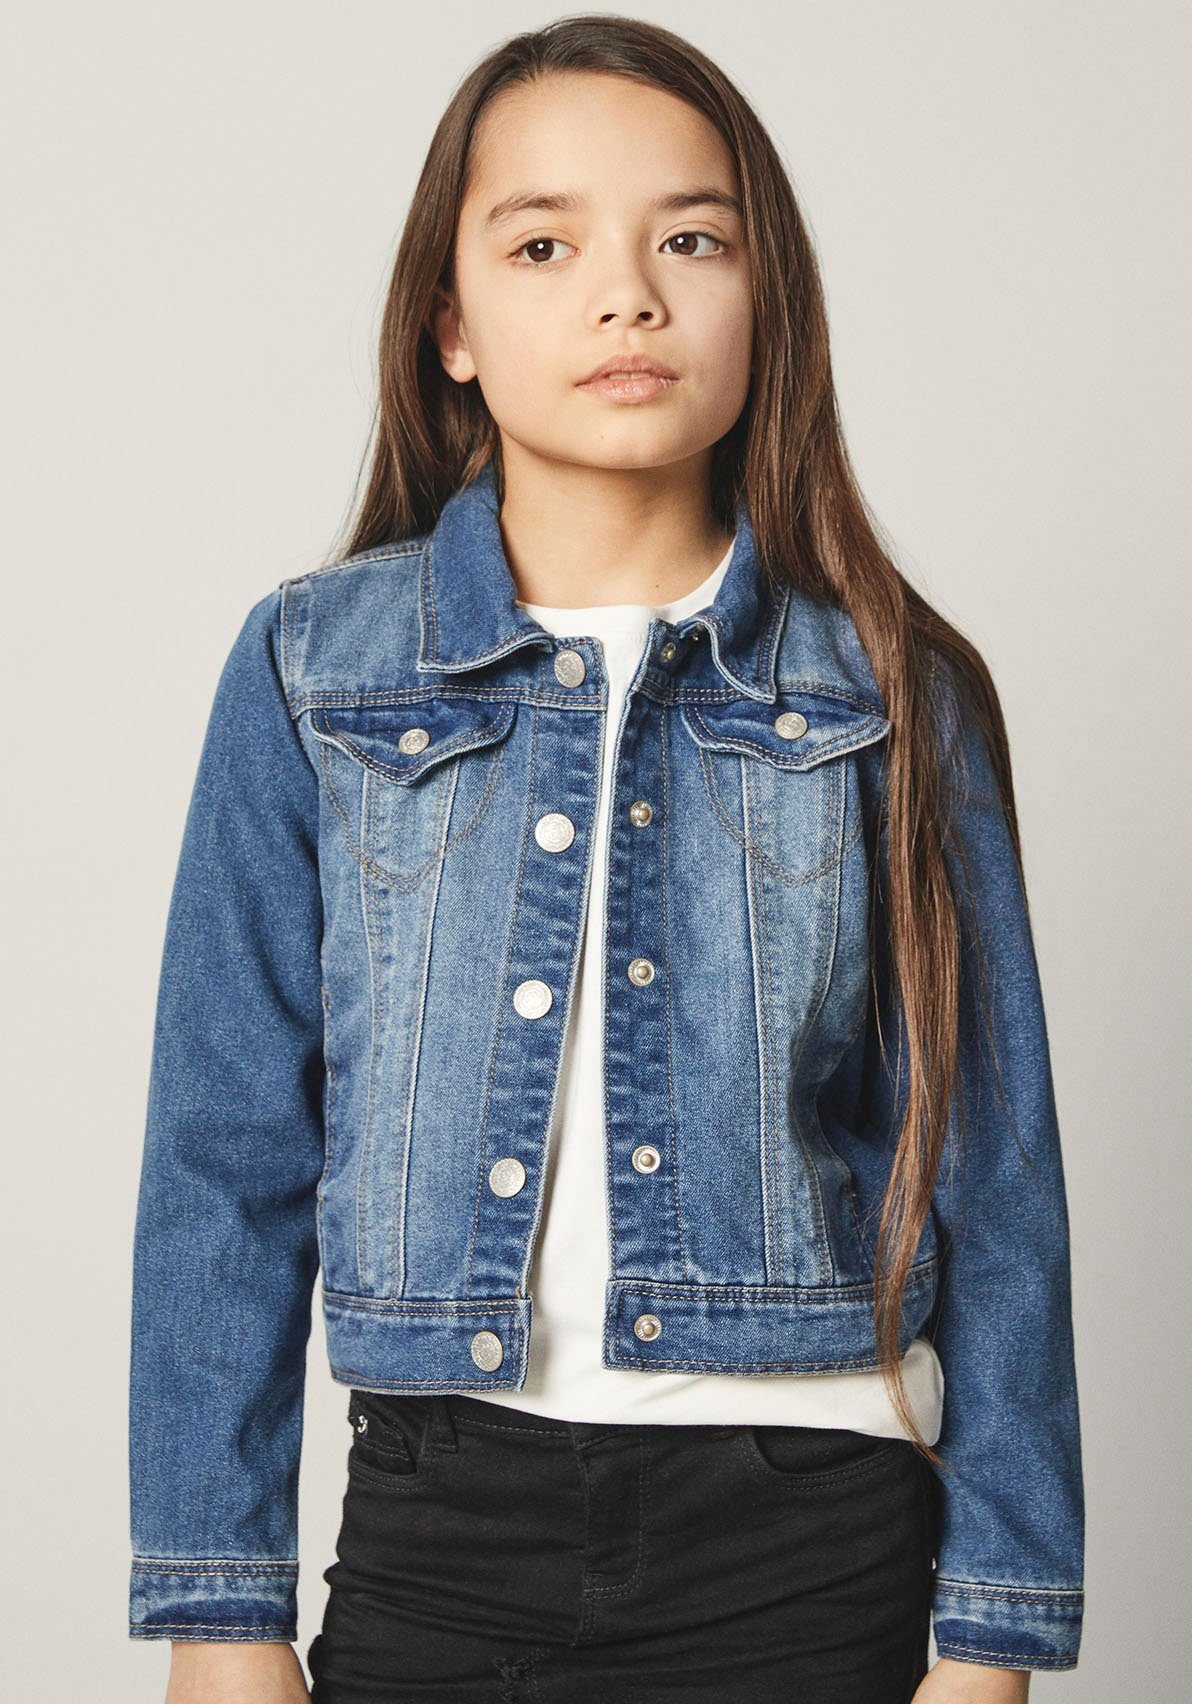 Jeansjacken für Mädchen » Denim-Look für die Kleinen | OTTO